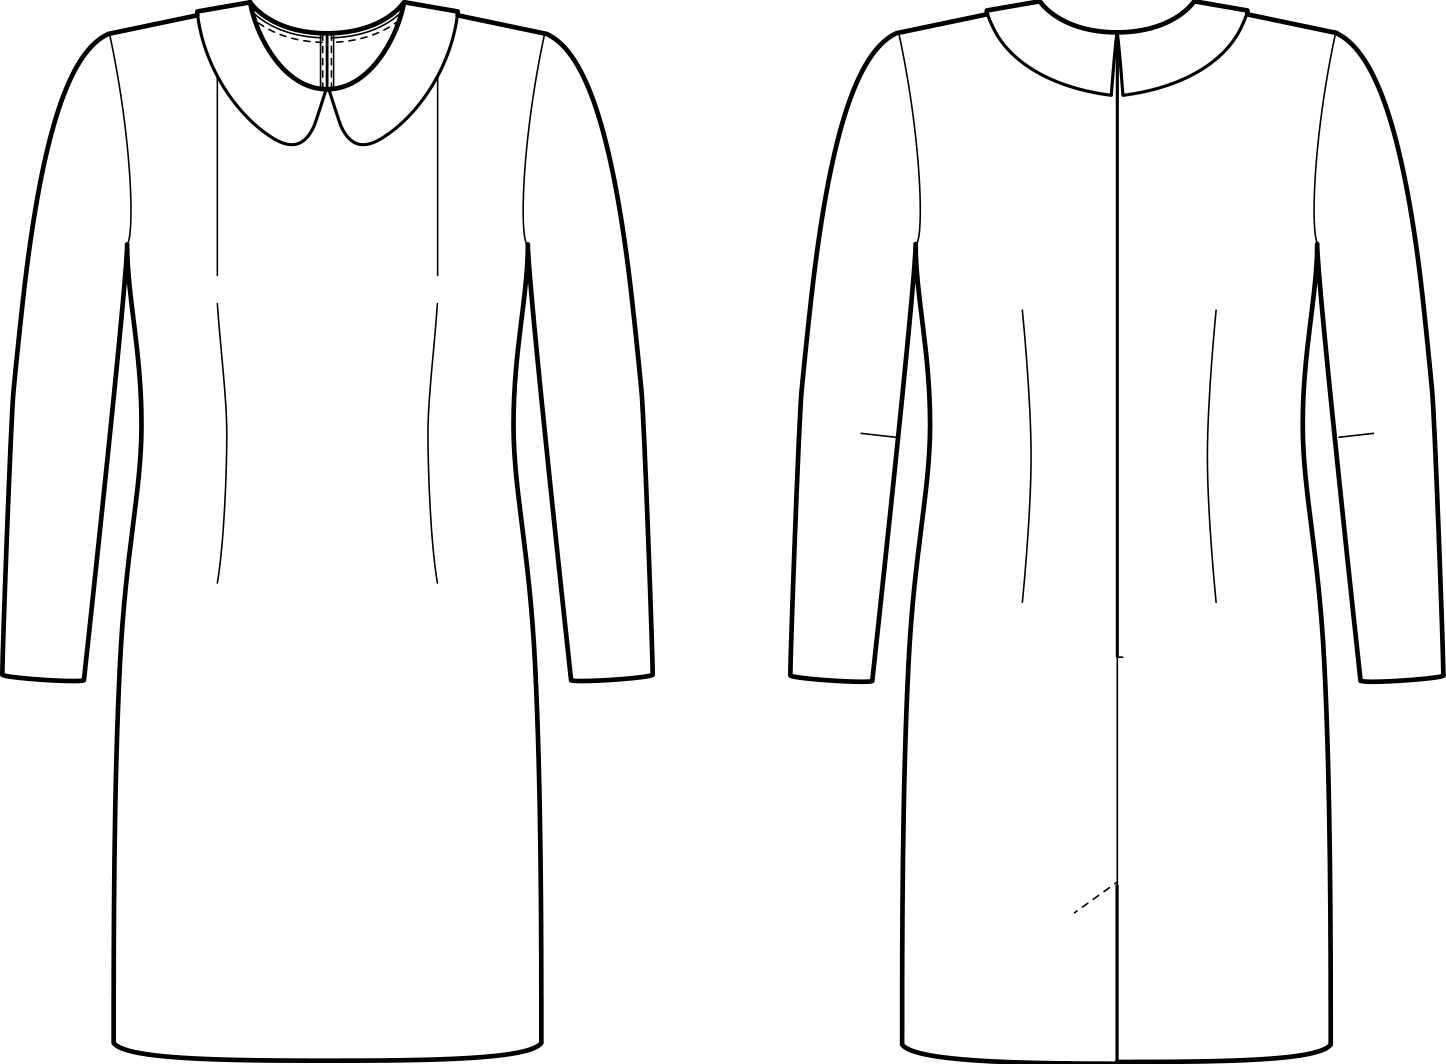 Vorder- und Rückansicht der technische Zeichnung eines Kleides mit Abnähern